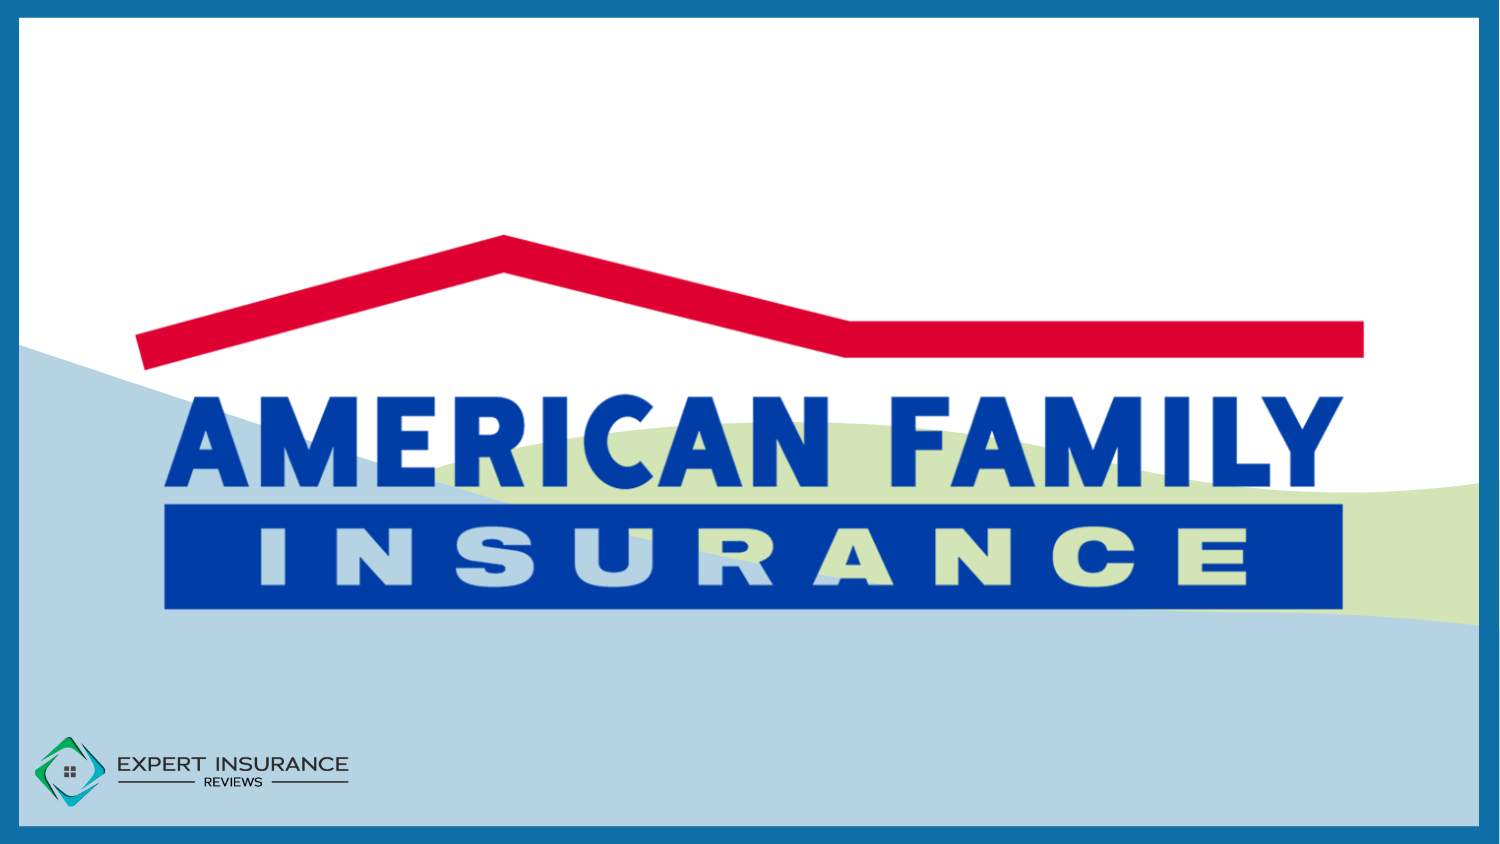 American Family: Best Home Insurance for Seniors